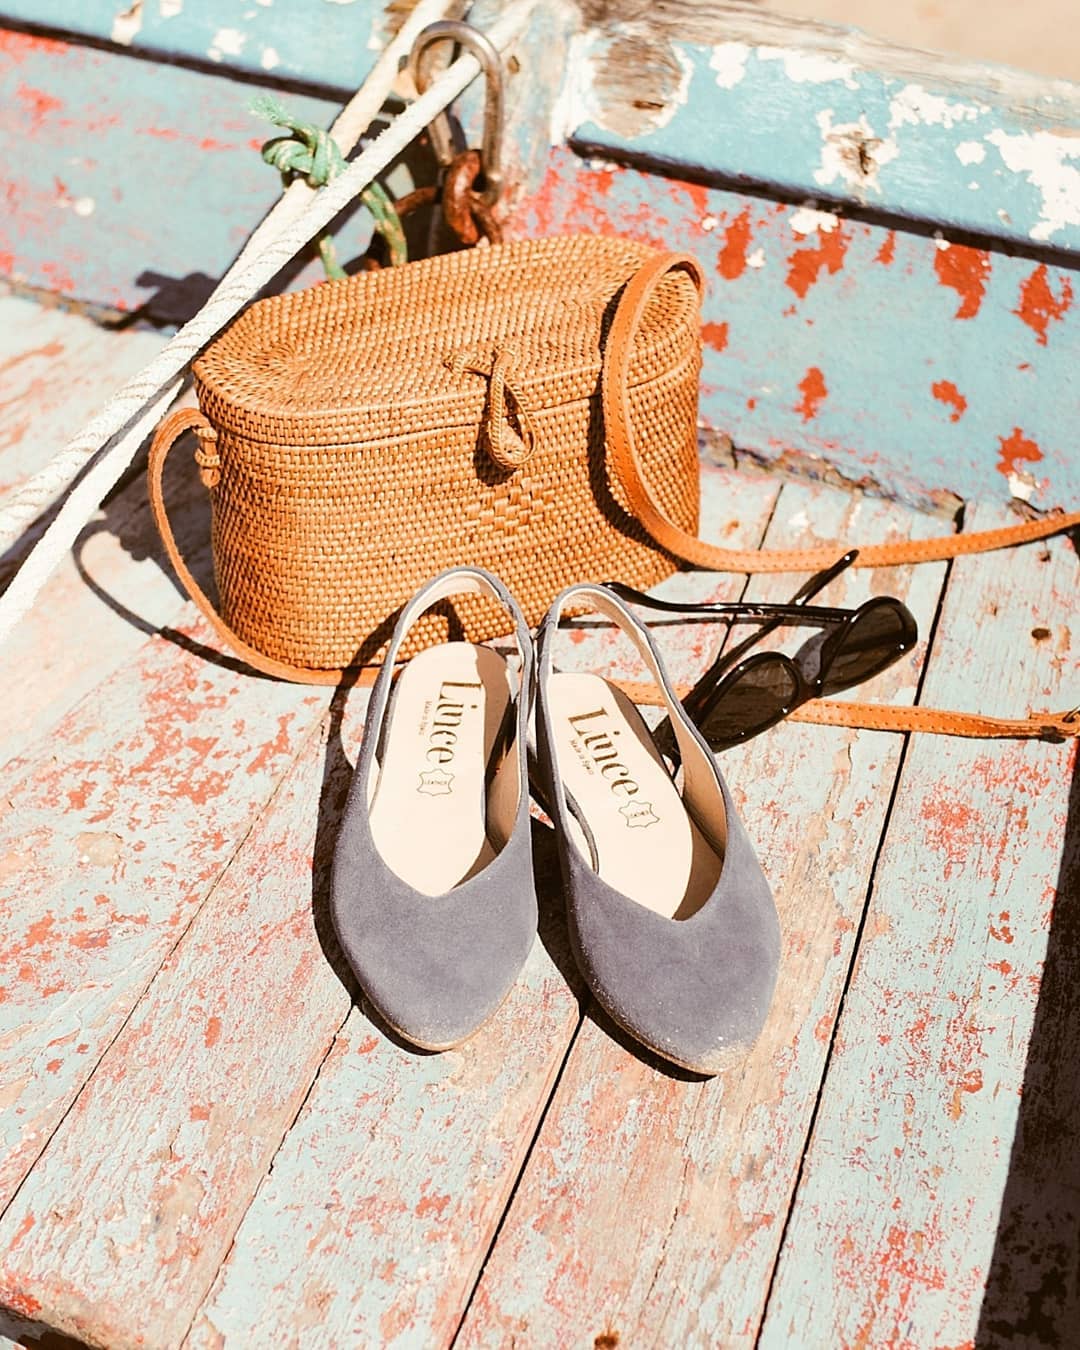 Lince Shoes on "@niayernimananah elige entre sus complementos de temporada estos zapatos de piel Lince Shoes. Disponibles online https://t.co/hF3JLPmpaT . #Linceshoes #Lovelifelince #calzadodepiel #zapatosmujer #MadeInSpain #shoesaddict ...